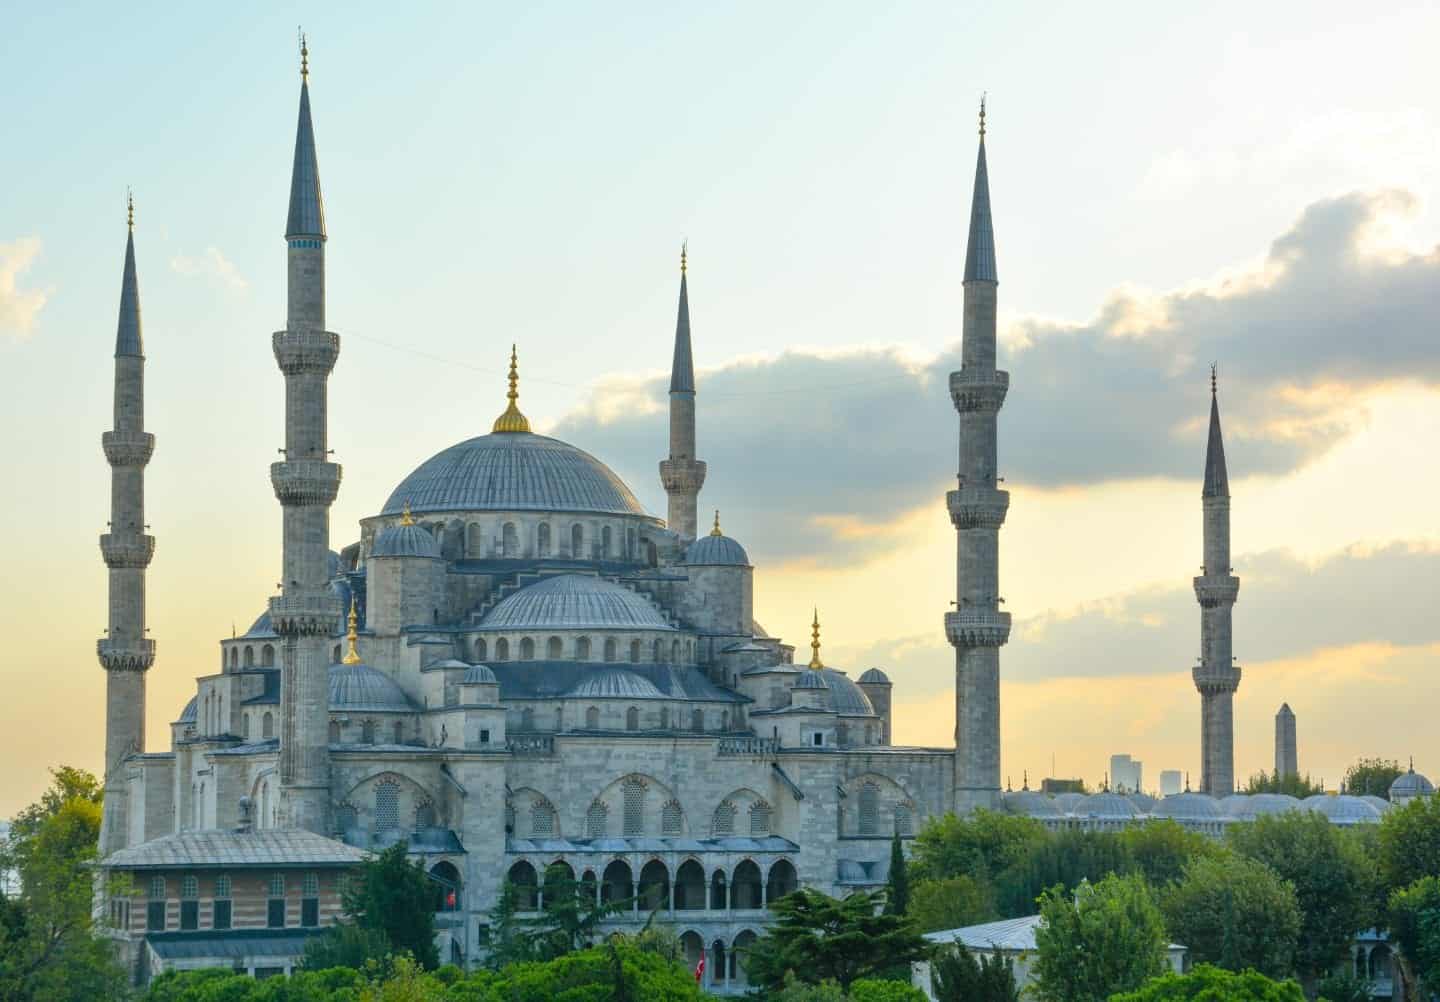 Vea los mejores lugares para visitar en Turquía, toma de la ornamentada mezquita Hagia Sophia con techos abovedados y pilares altos y puntiagudos al atardecer